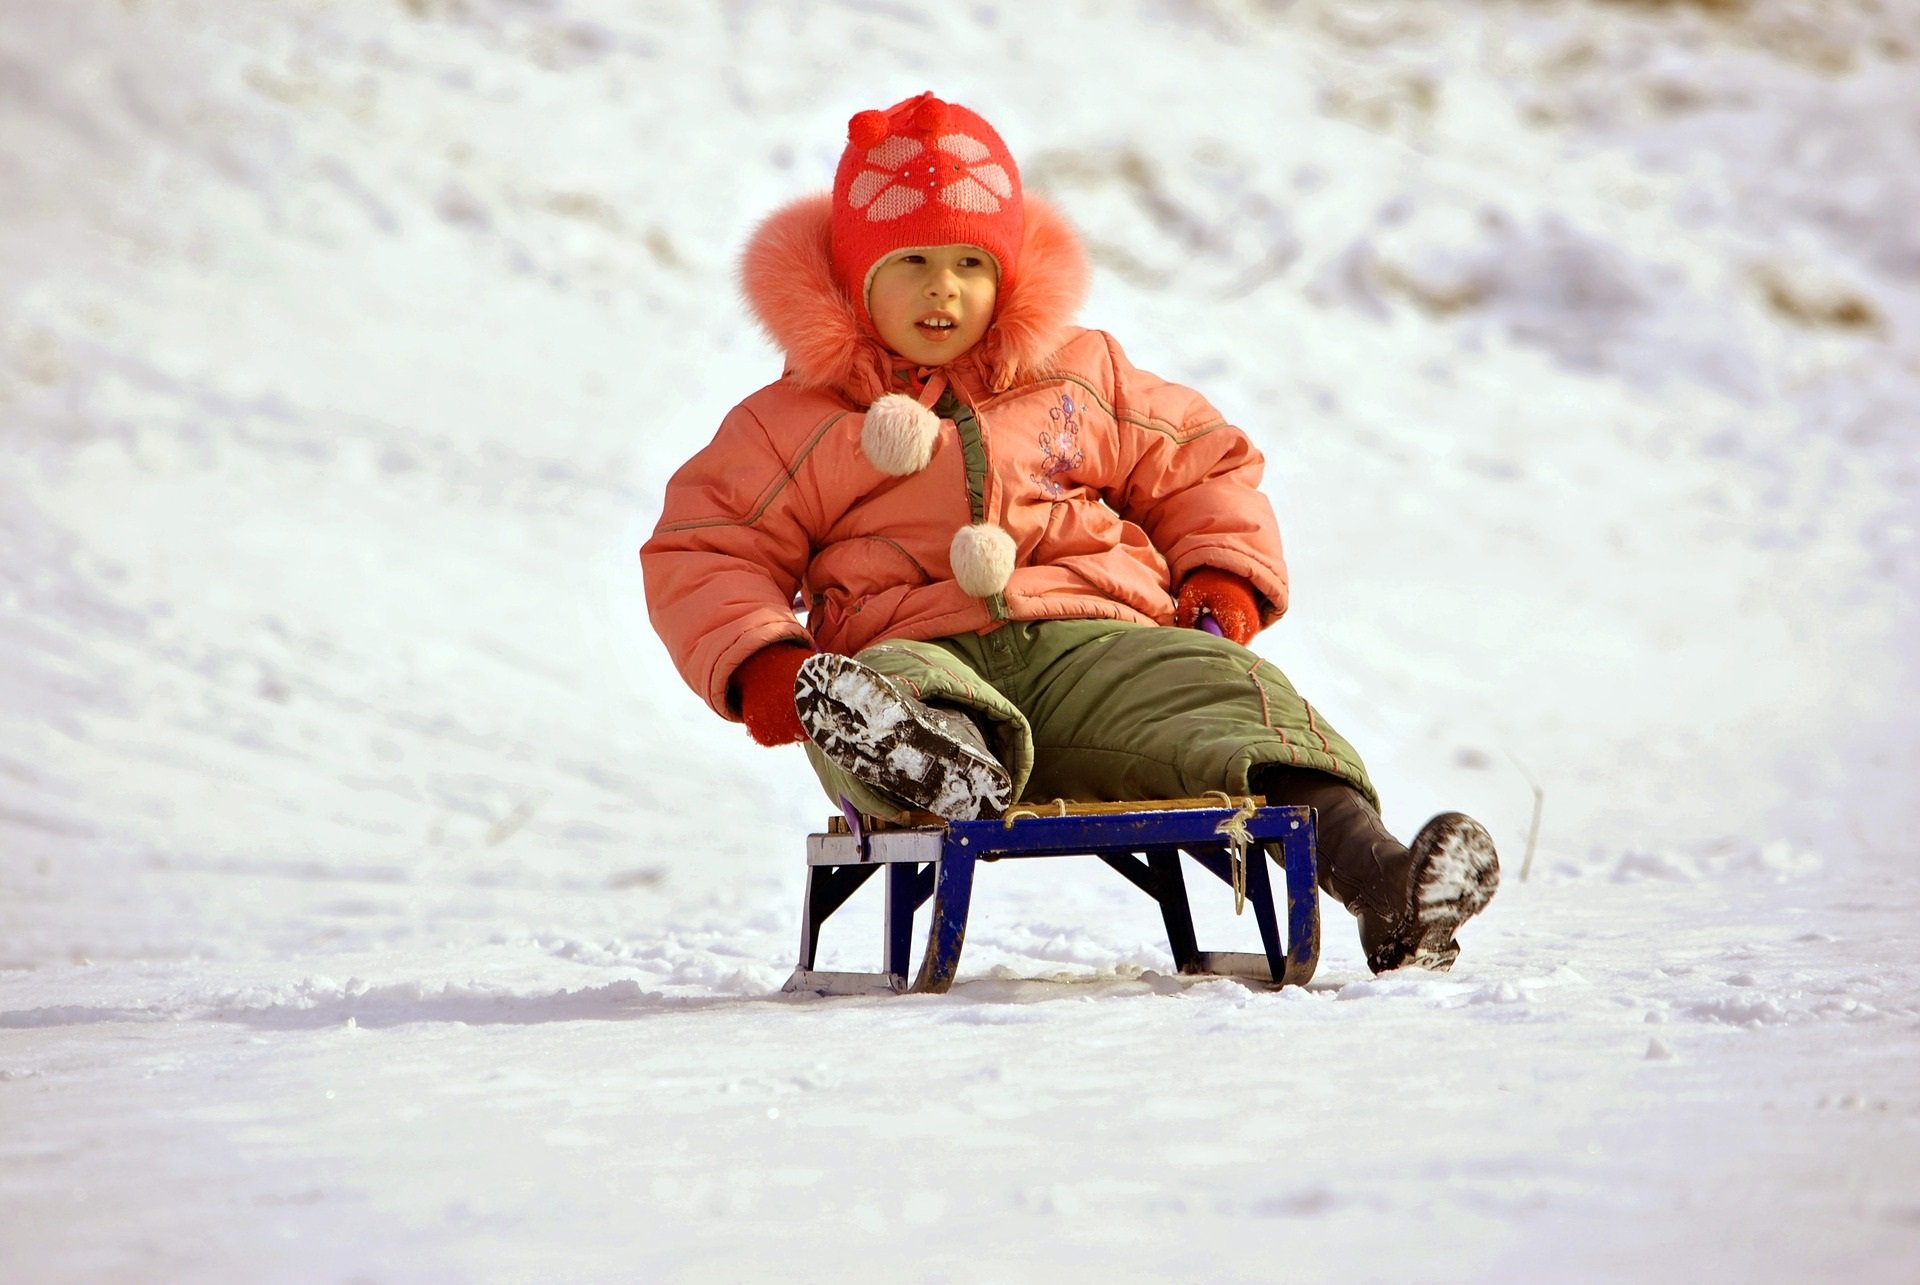 Sleigh Ride, angielska piosenka dla dzieci na zimę i święta, tekst i muzyka